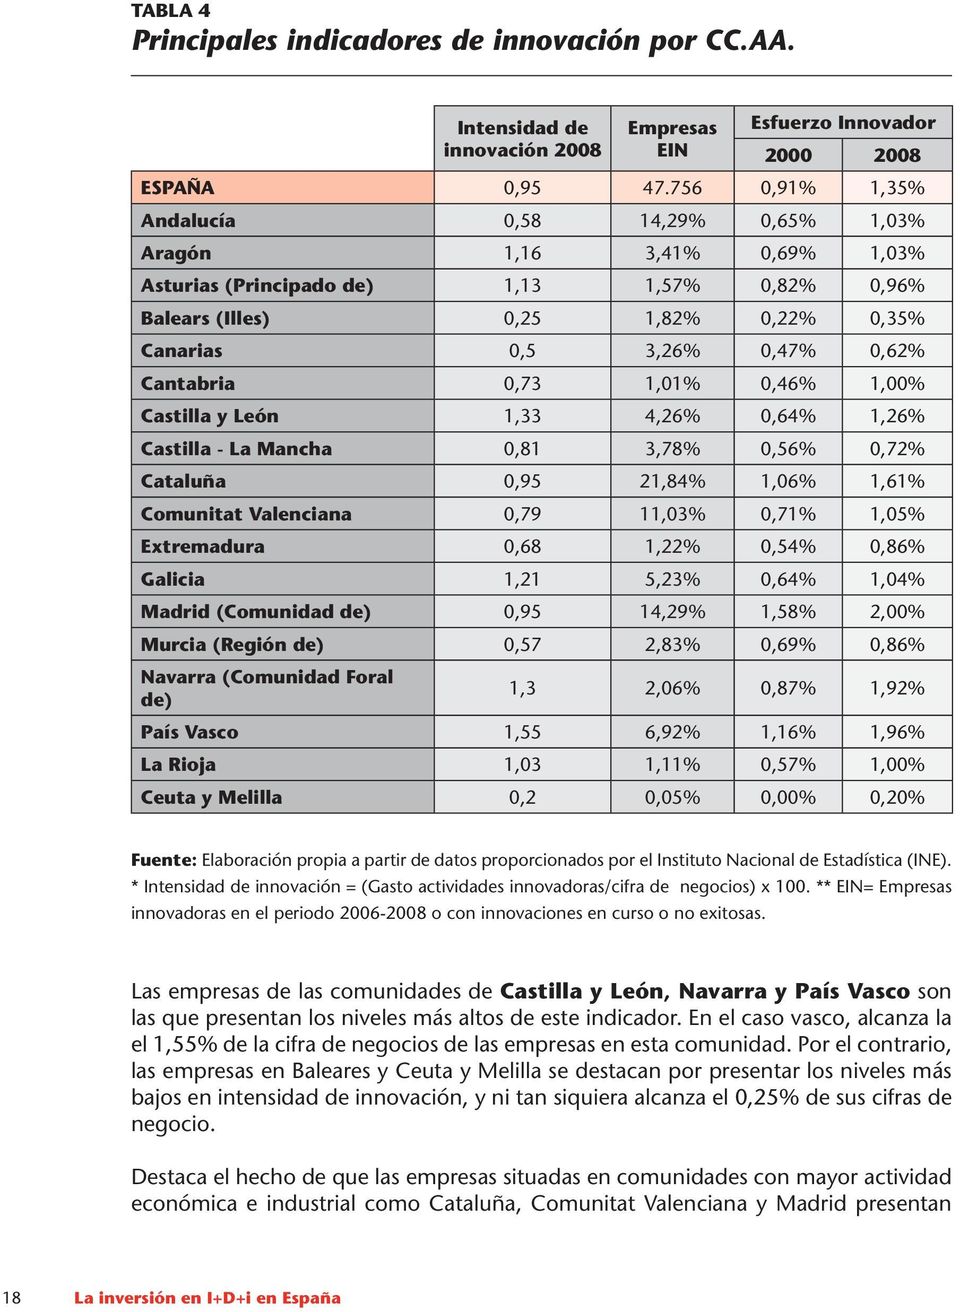 Cantabria 0,73 1,01% 0,46% 1,00% Castilla y León 1,33 4,26% 0,64% 1,26% Castilla - La Mancha 0,81 3,78% 0,56% 0,72% Cataluña 0,95 21,84% 1,06% 1,61% Comunitat Valenciana 0,79 11,03% 0,71% 1,05%